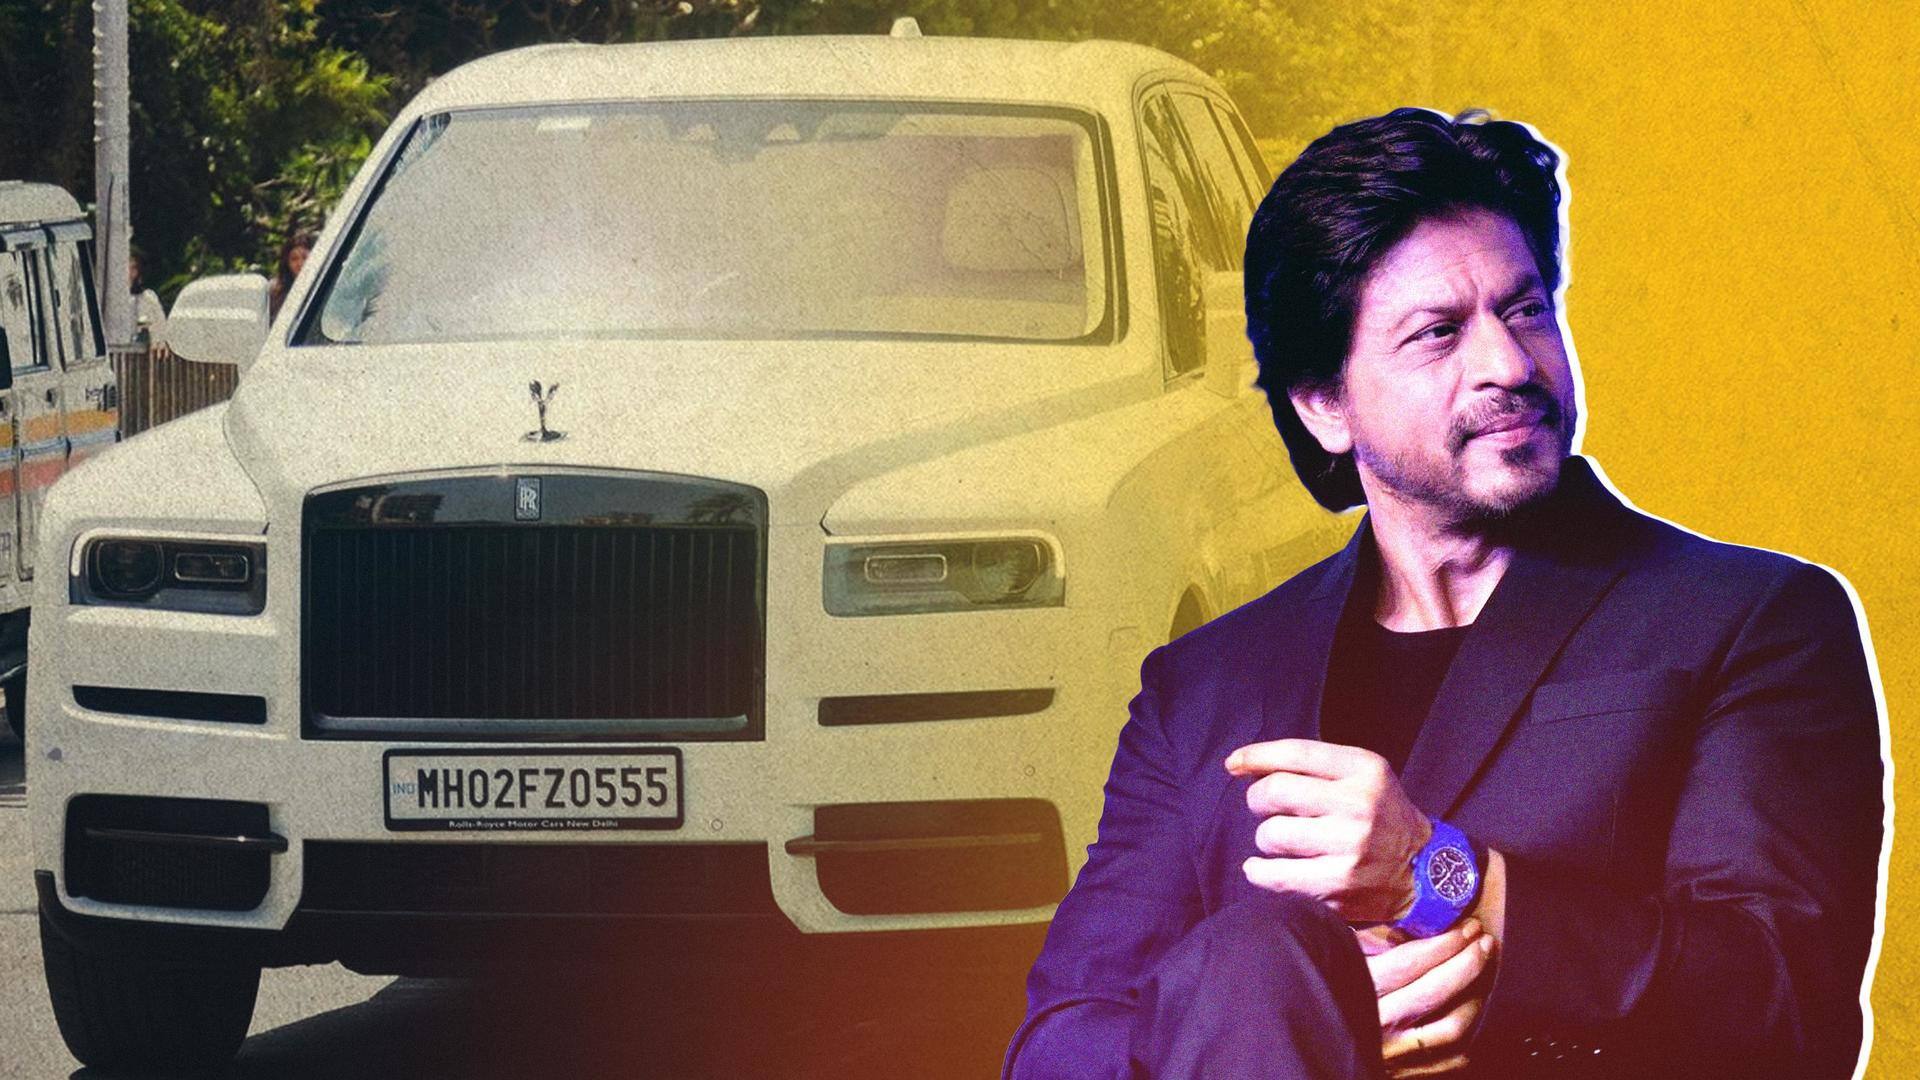 A look at Shah Rukh Khan's luxurious fleet of cars